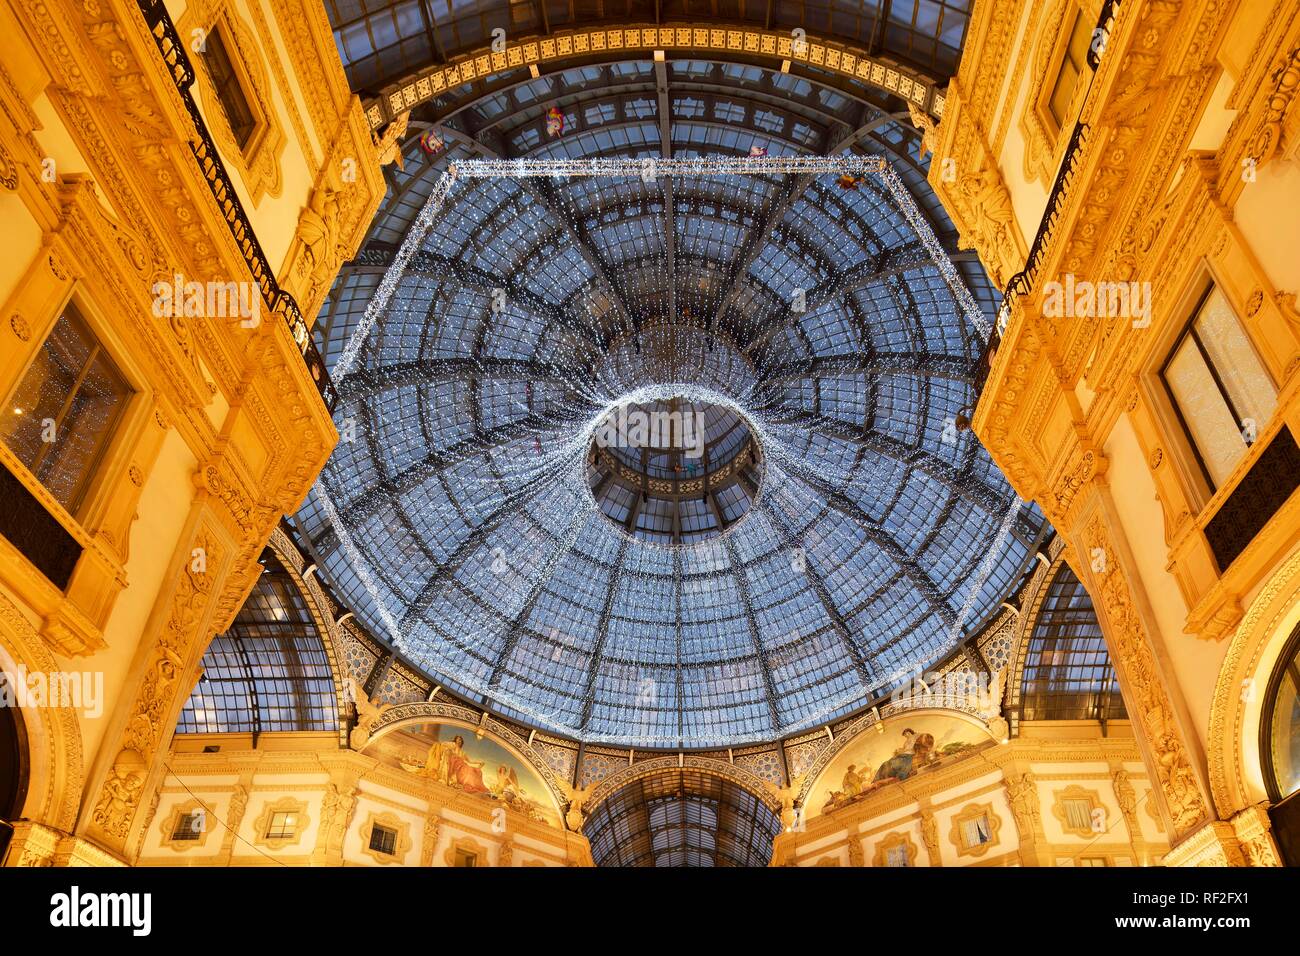 Iluminación de navidad en la cúpula de vidrio encima del octógono, centro comercial de lujo, galería cubierta de la Galleria Vittorio Emanuele II Foto de stock